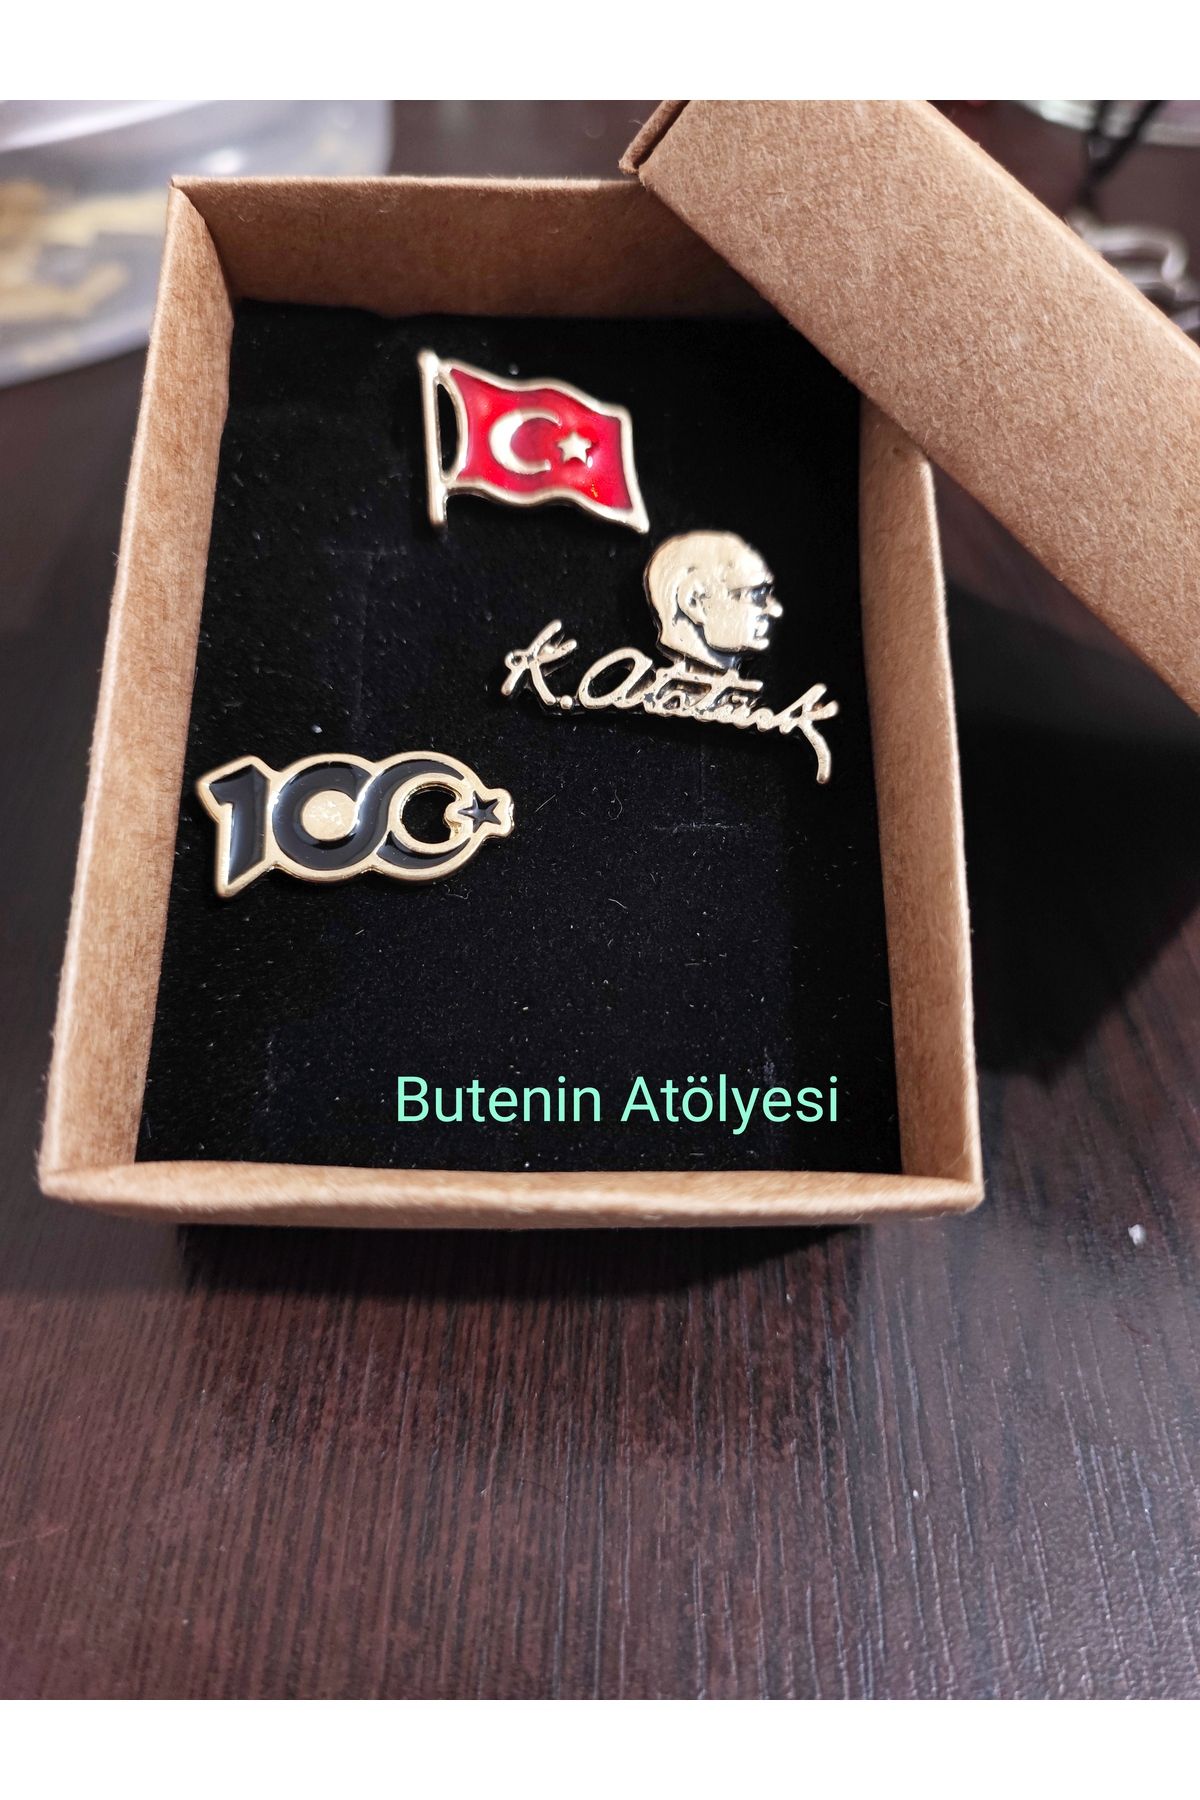 Butenin Atölyesi Dalgalı Türk Bayrağı, Atatürk büstü ve İmzalı rozet ve 100. Yıl  Gold renk yaka rozeti, 3'lü set